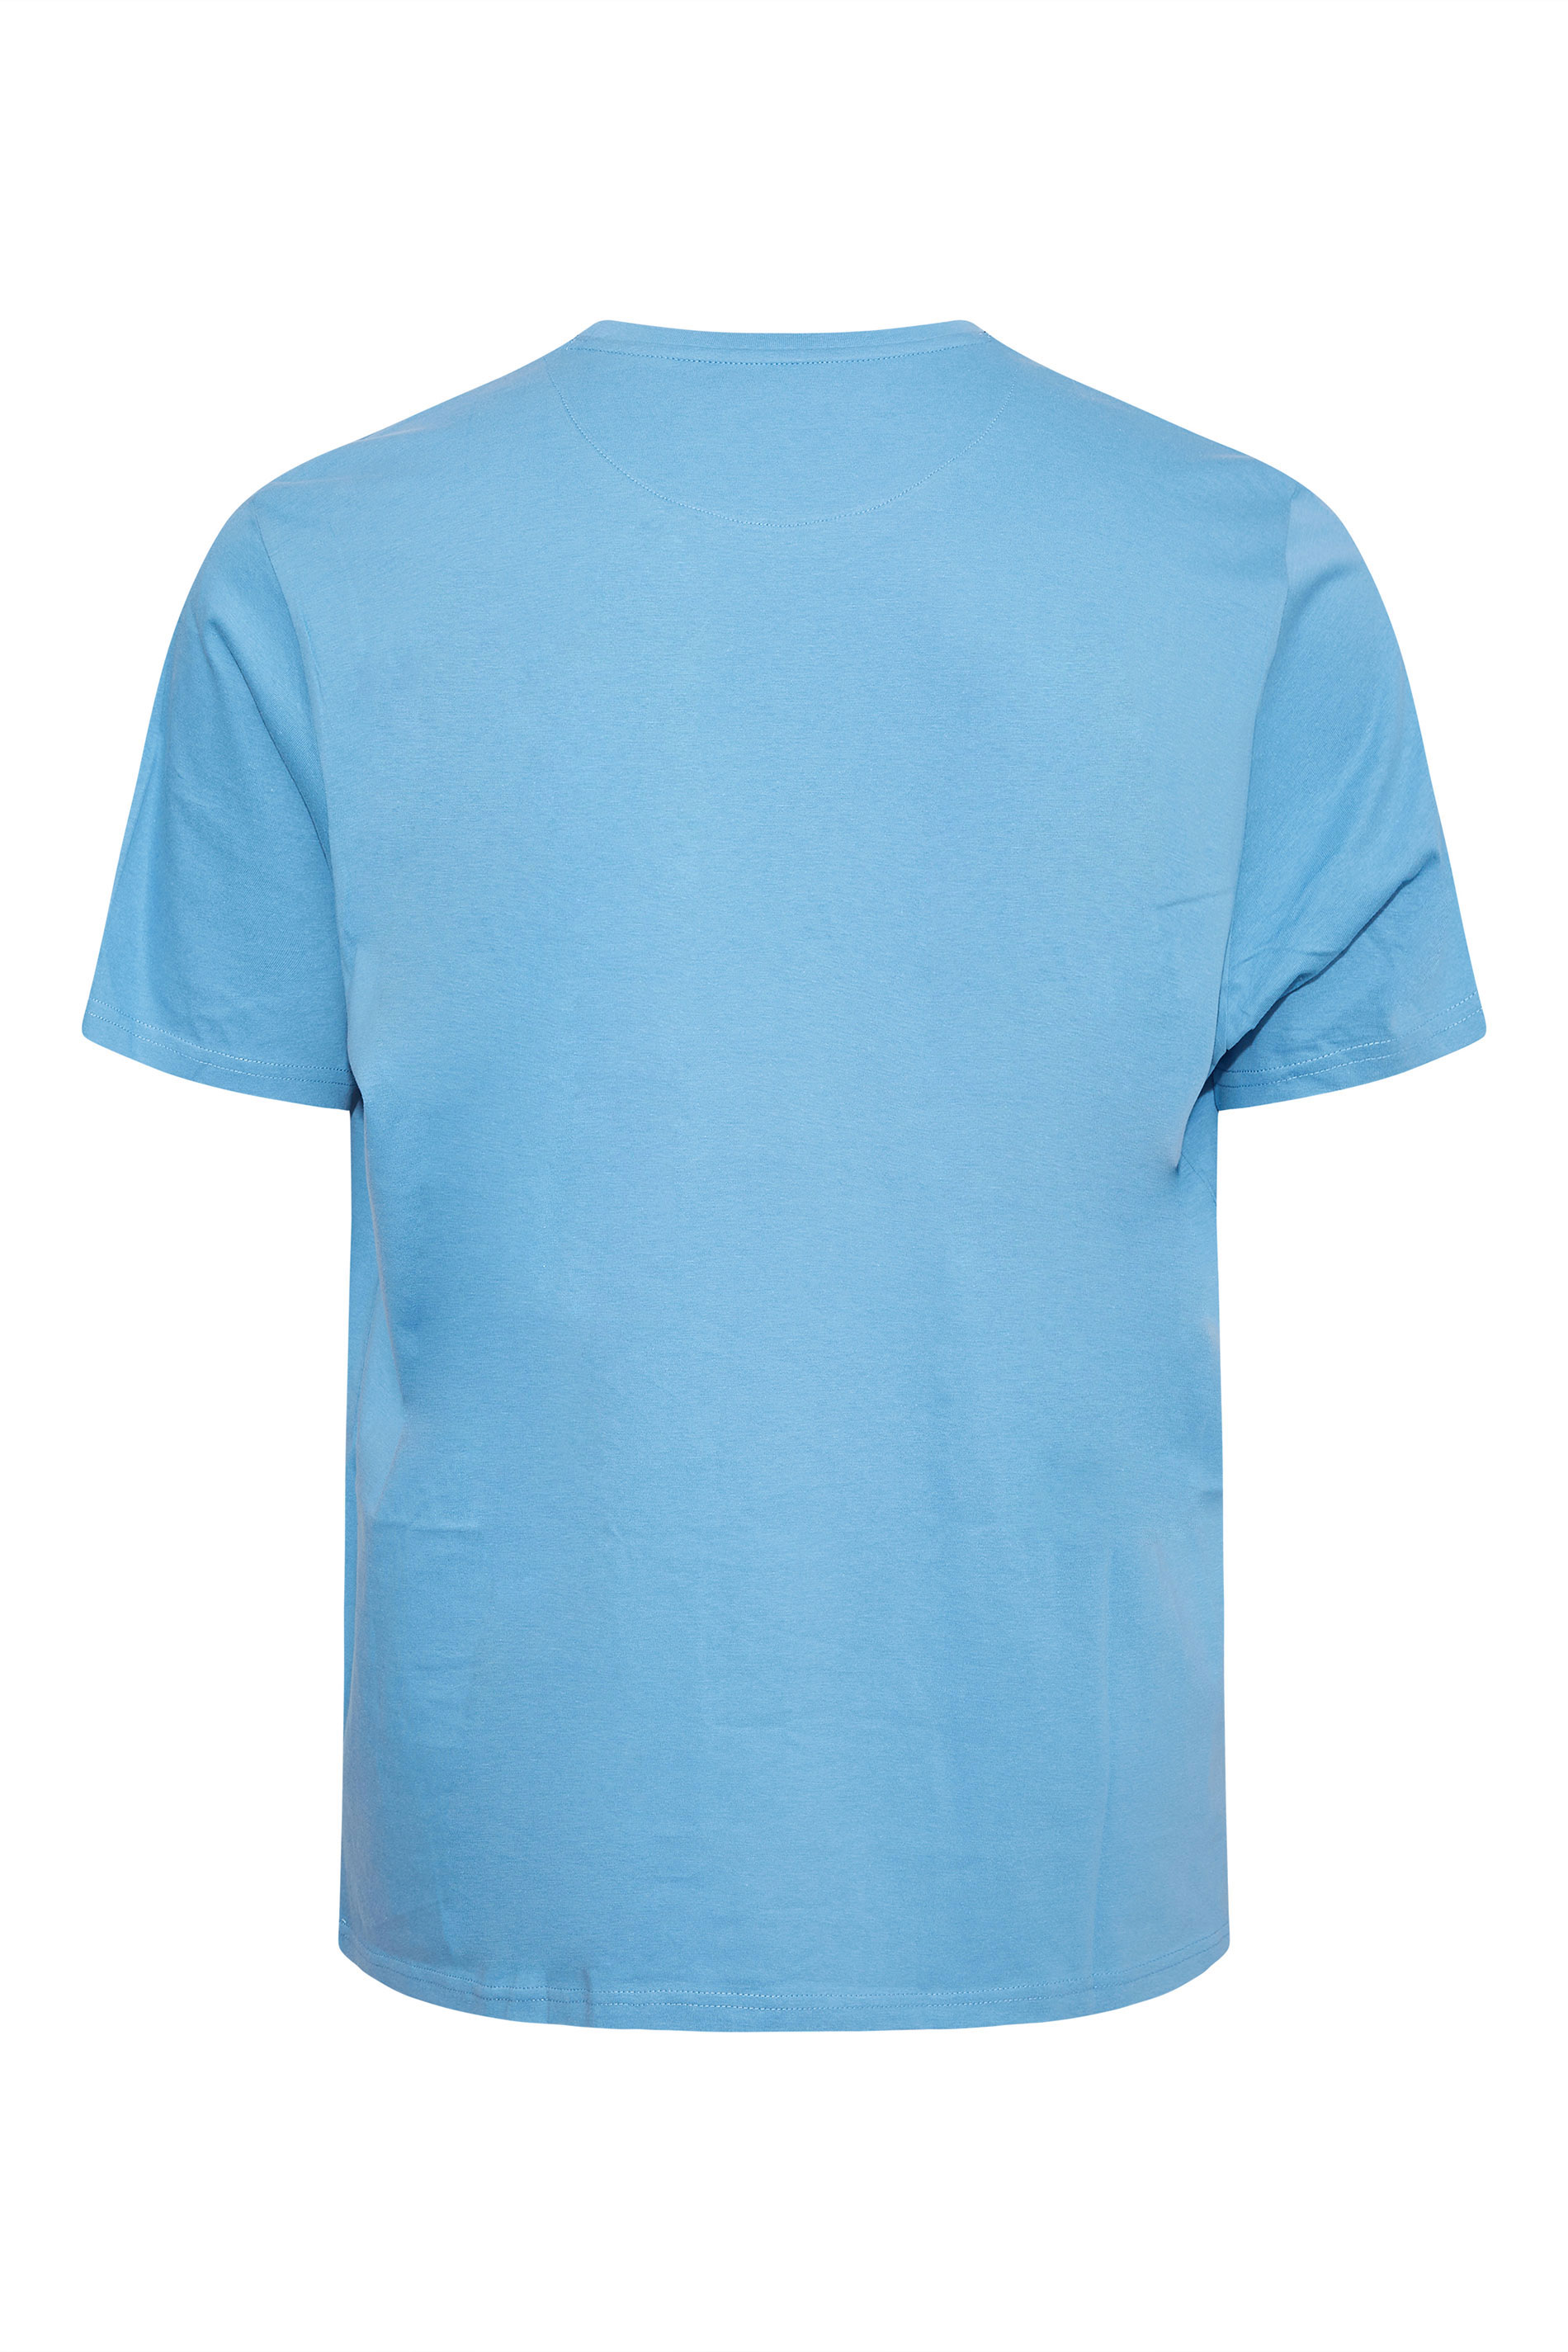 U.S. POLO ASSN. Blue Core T-Shirt | BadRhino